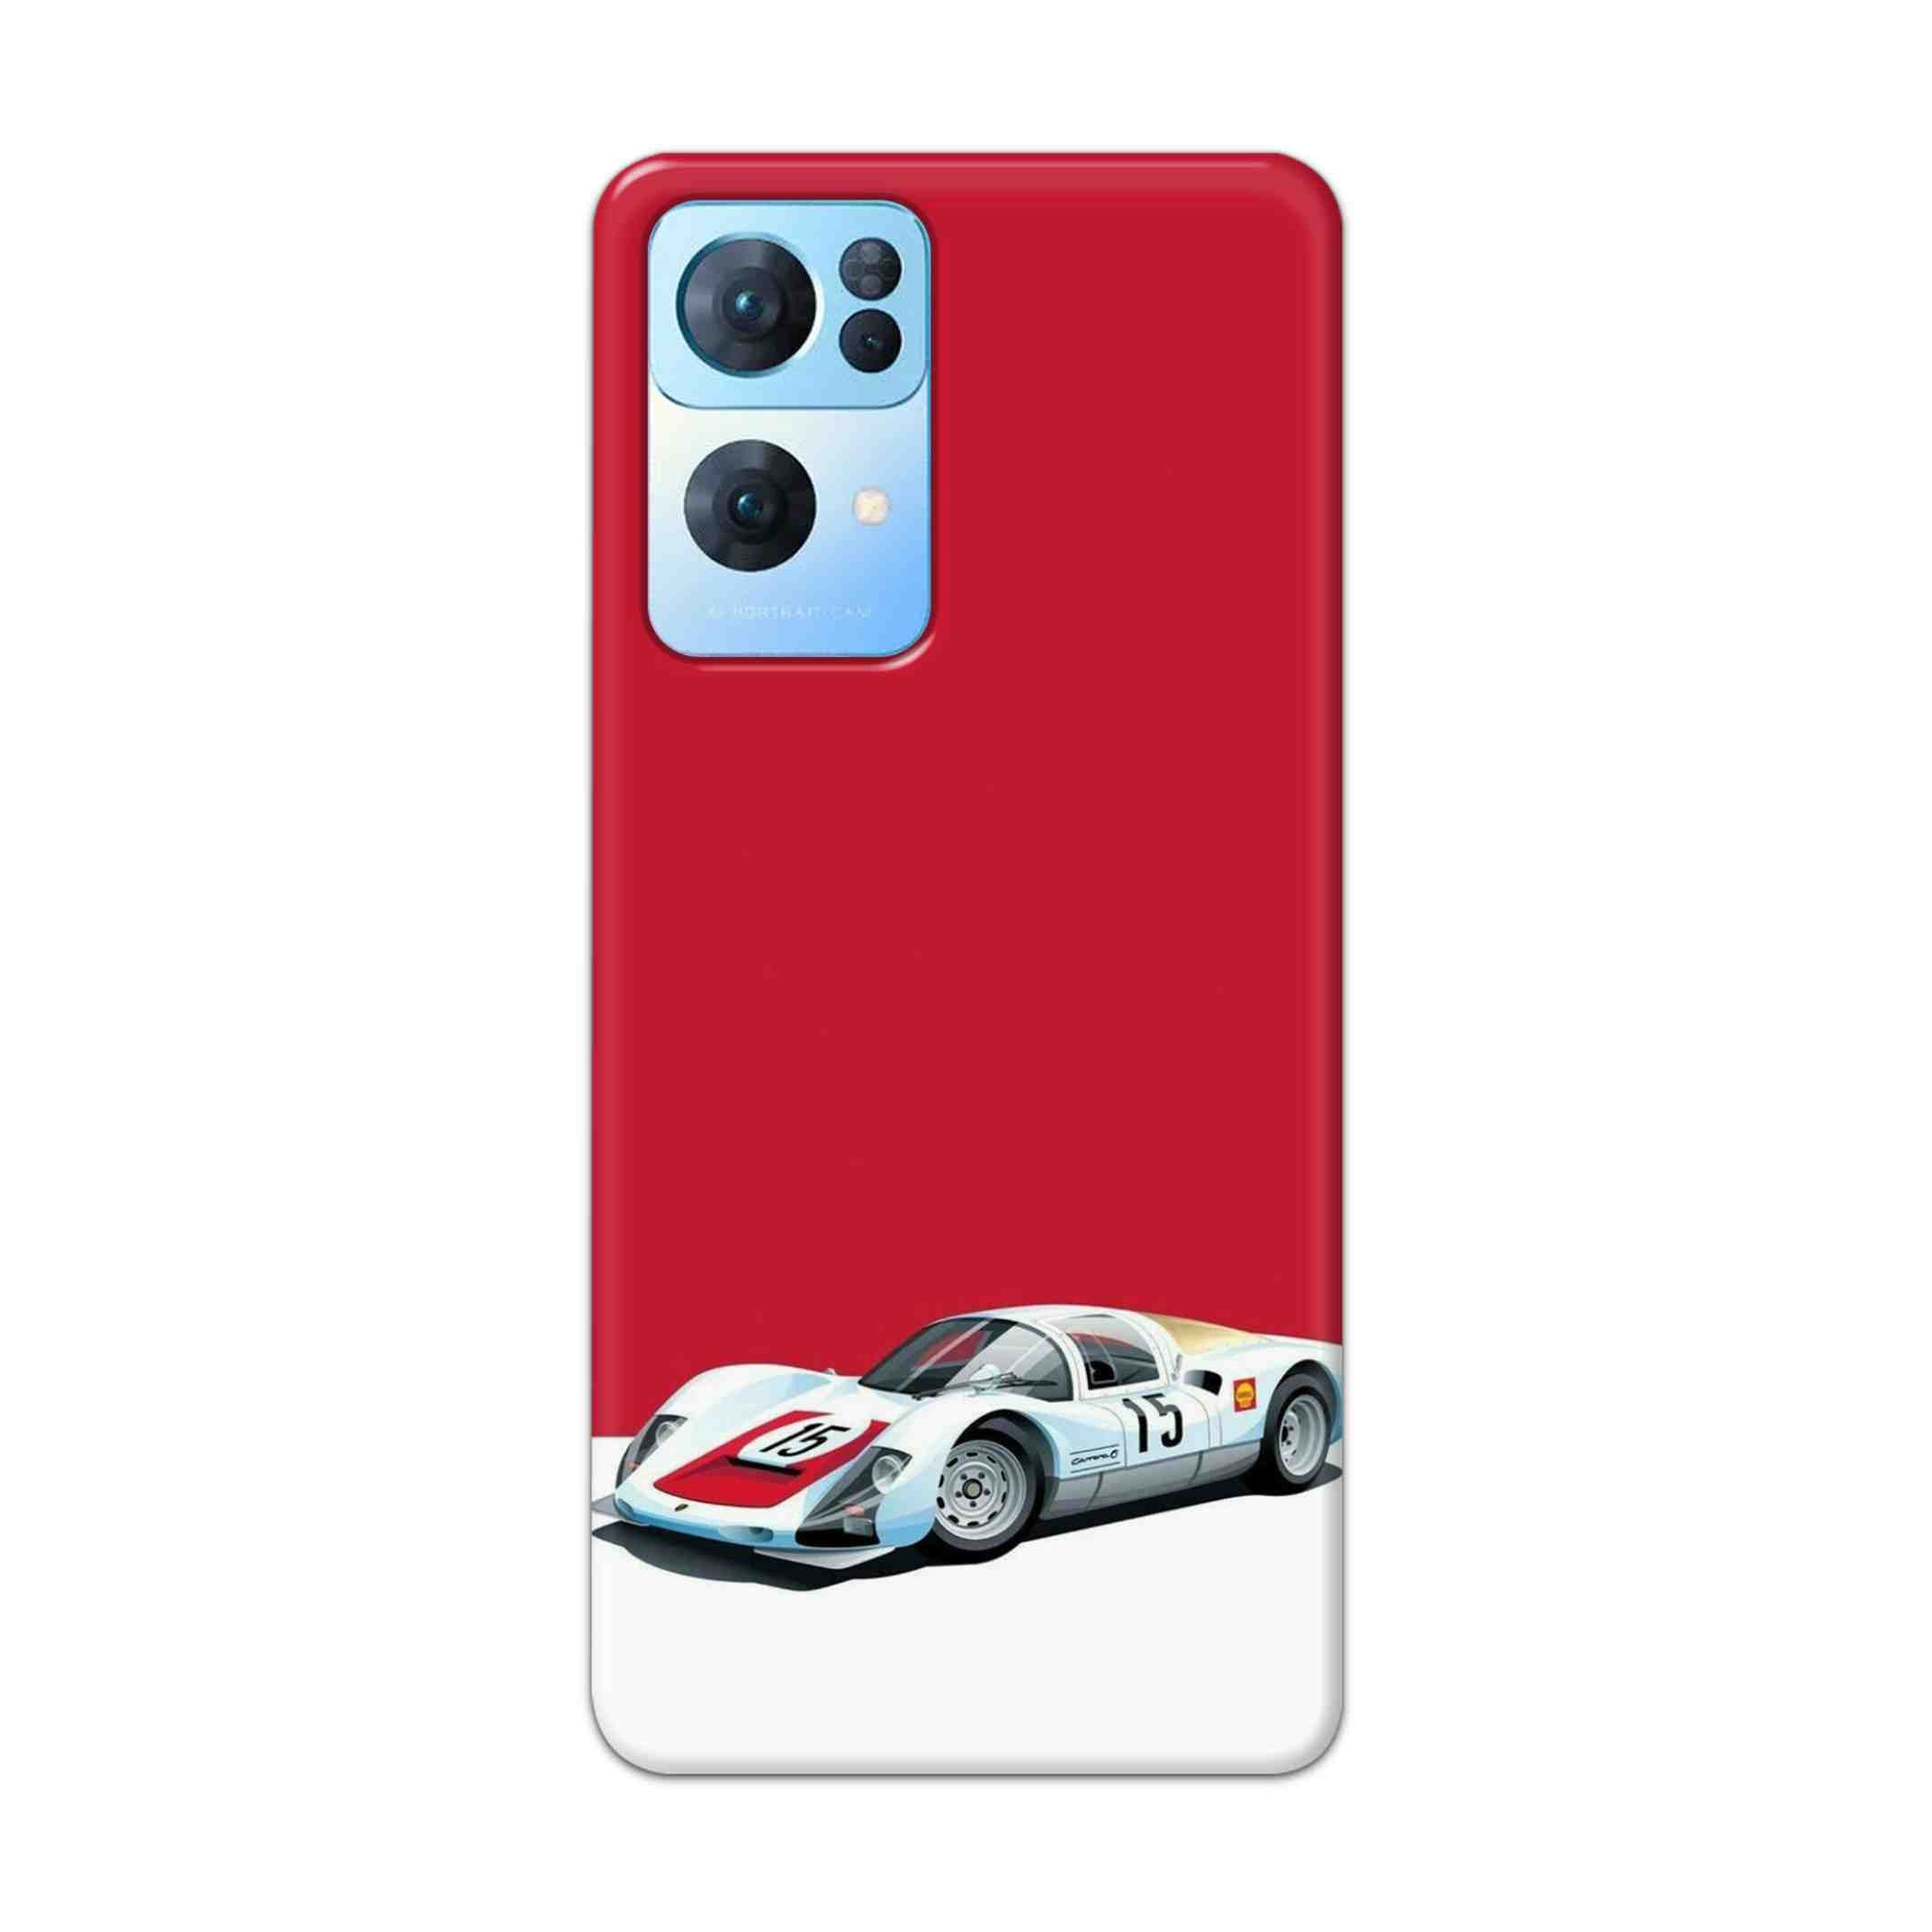 Buy Ferrari F15 Hard Back Mobile Phone Case Cover For Oppo Reno 7 Pro Online